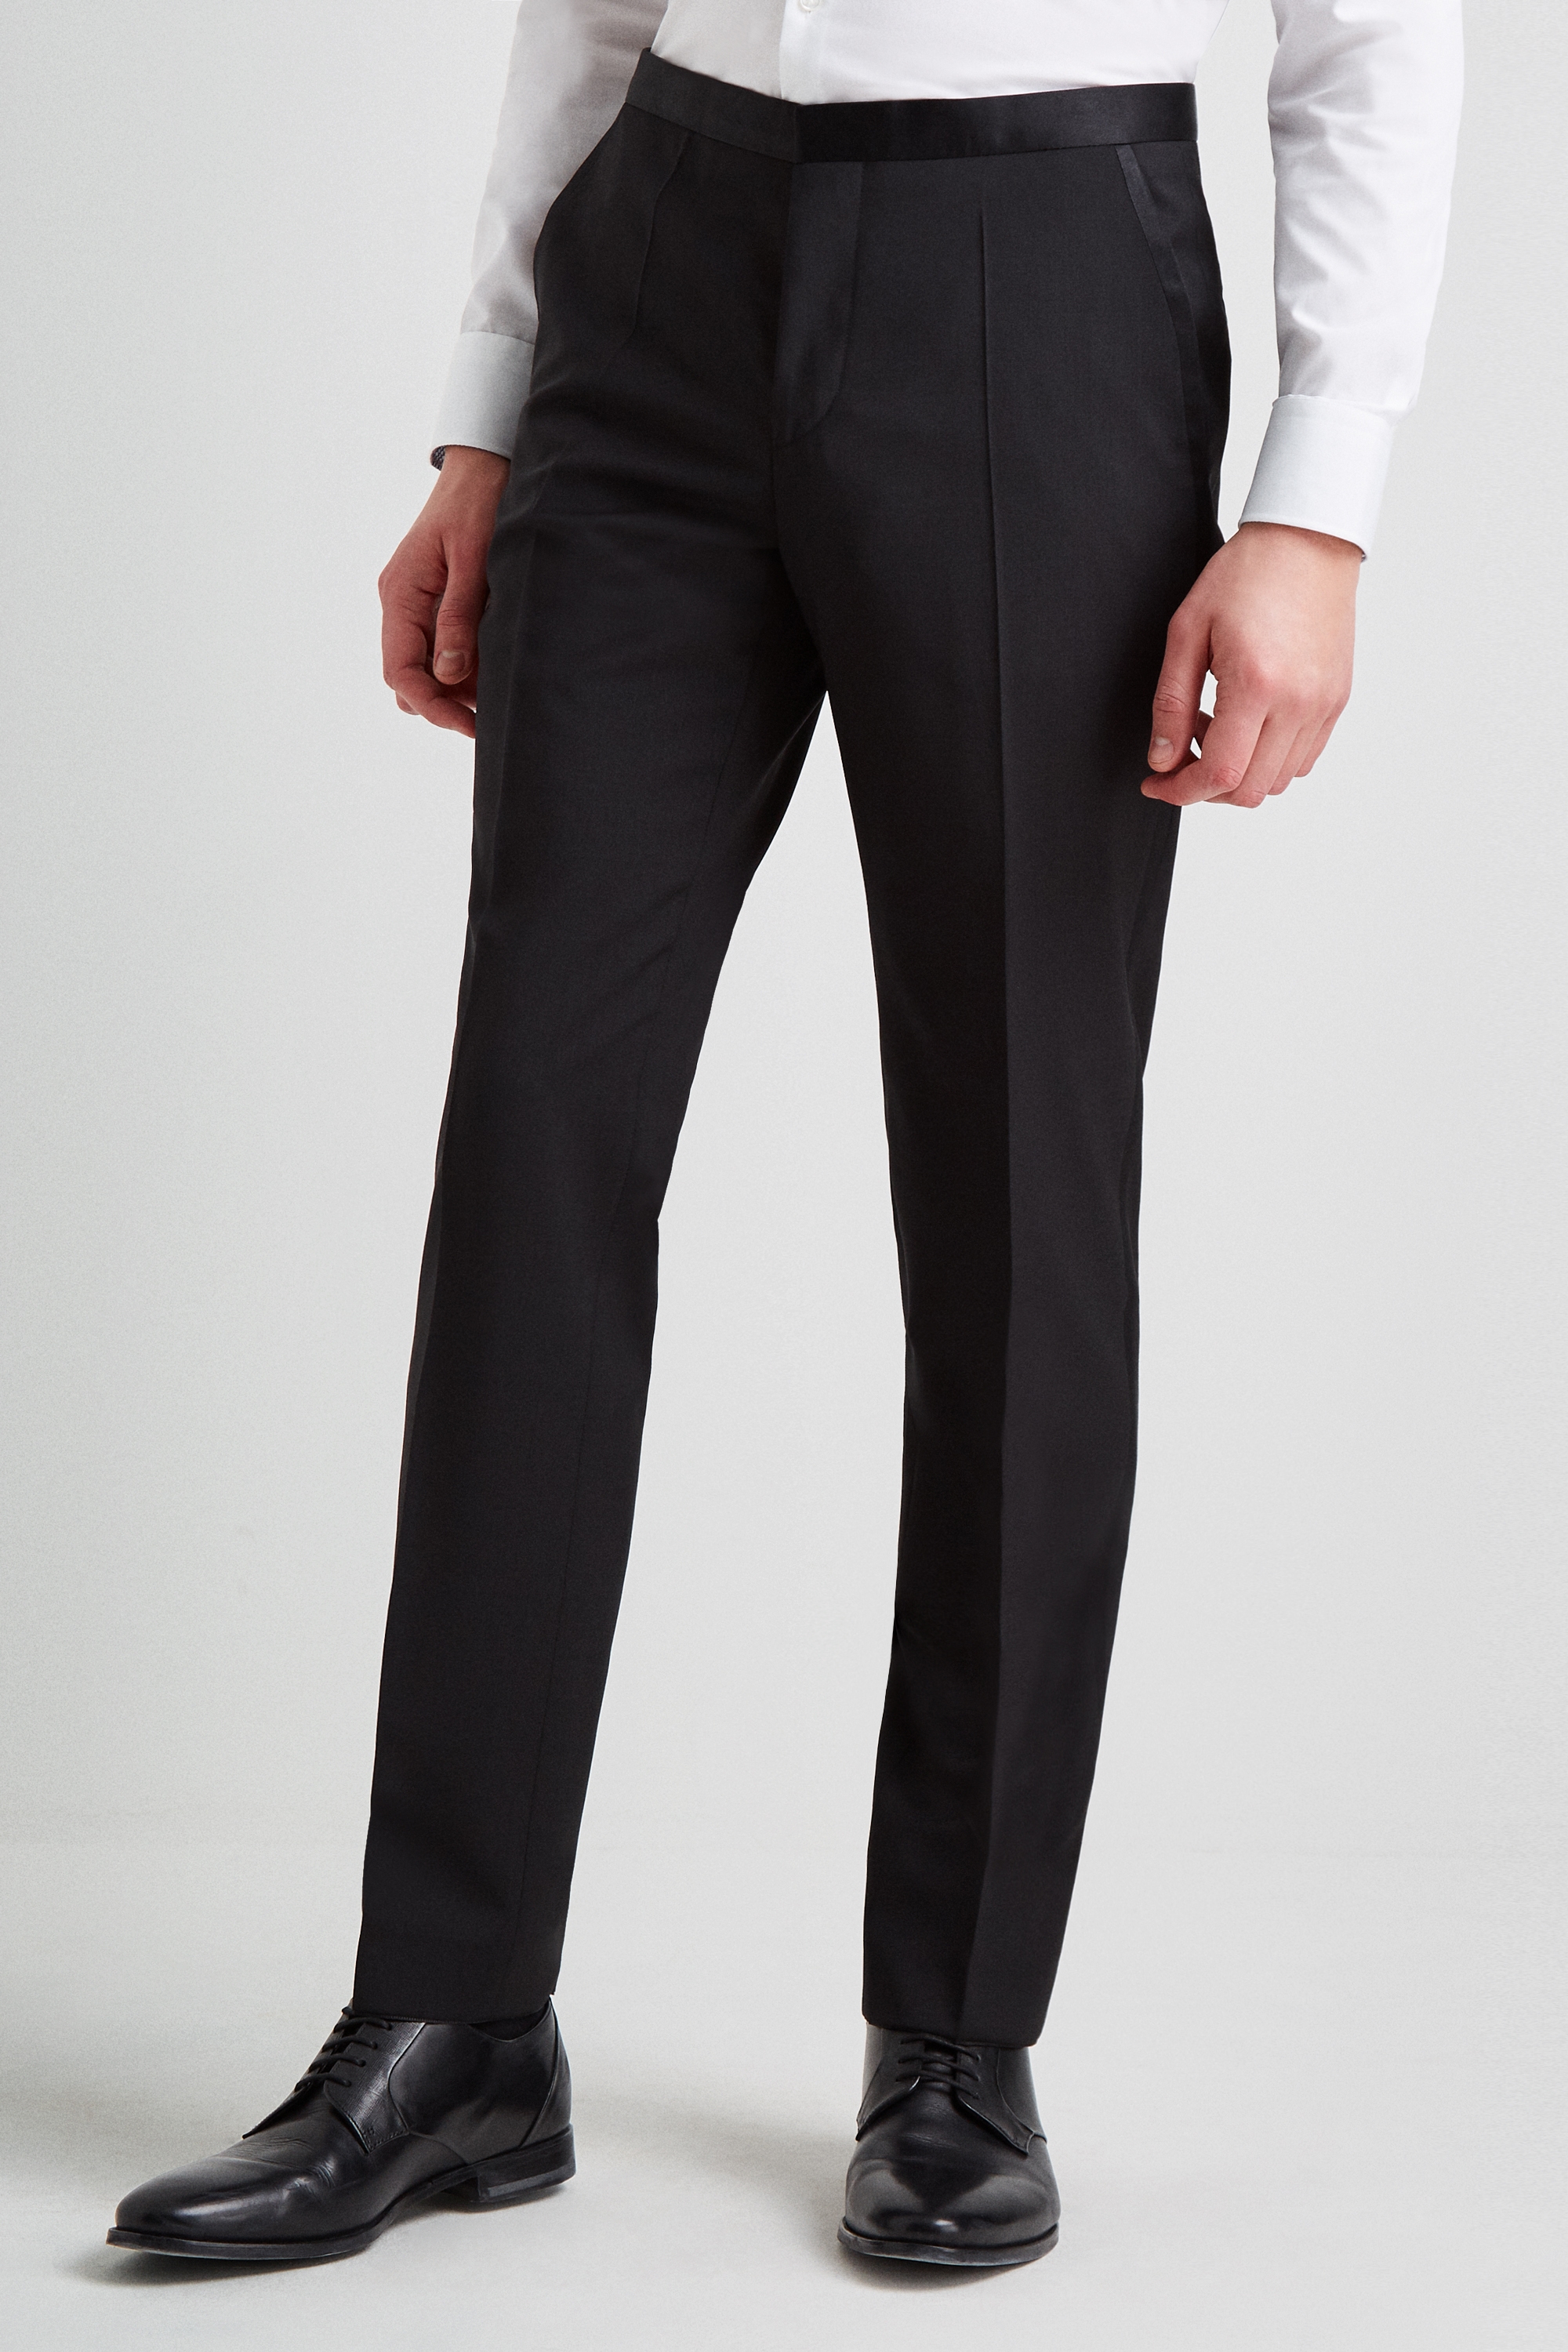 Buy > black slim suit pants > in stock